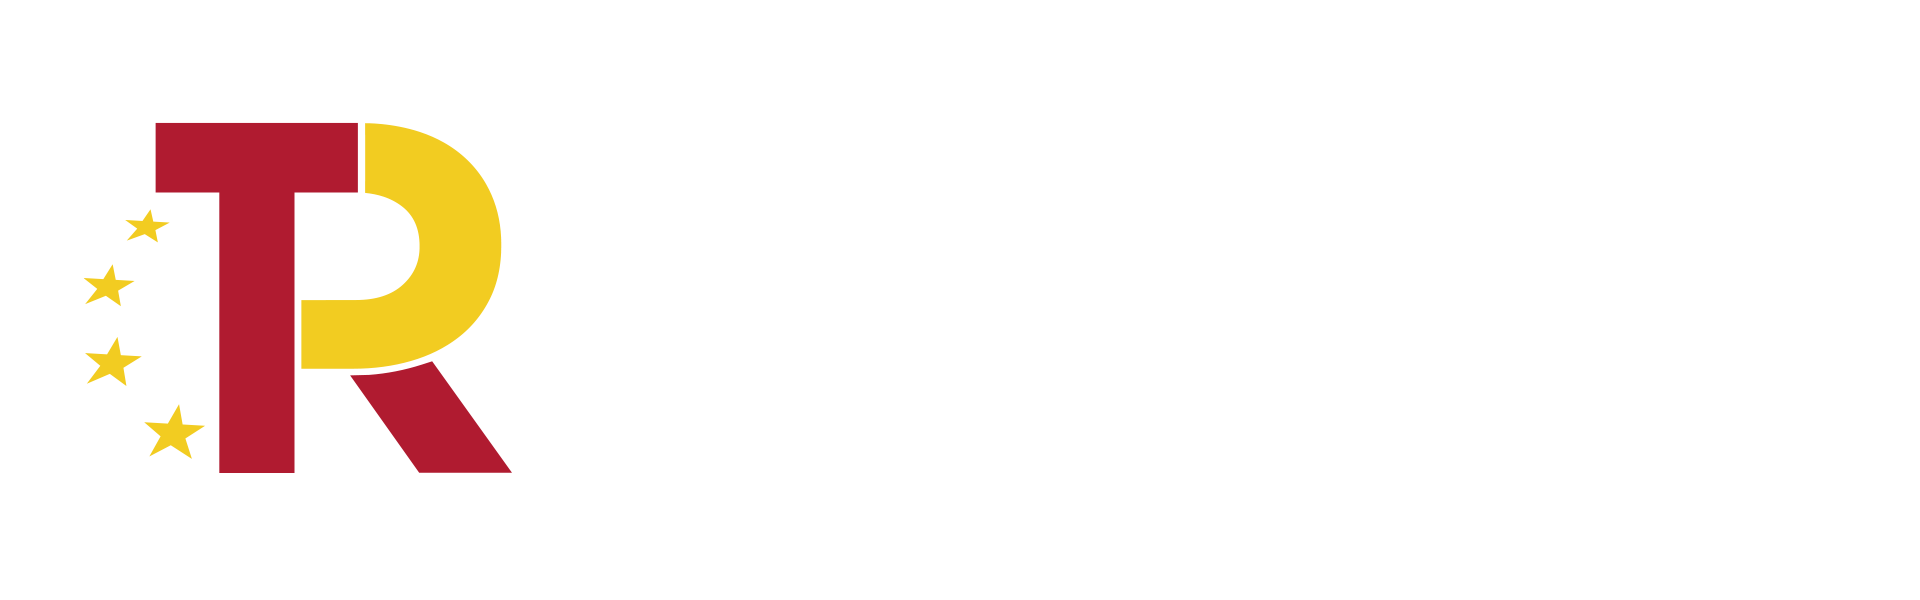 Plan de Recuperaci�n, Transformaci�n y Resiliencia